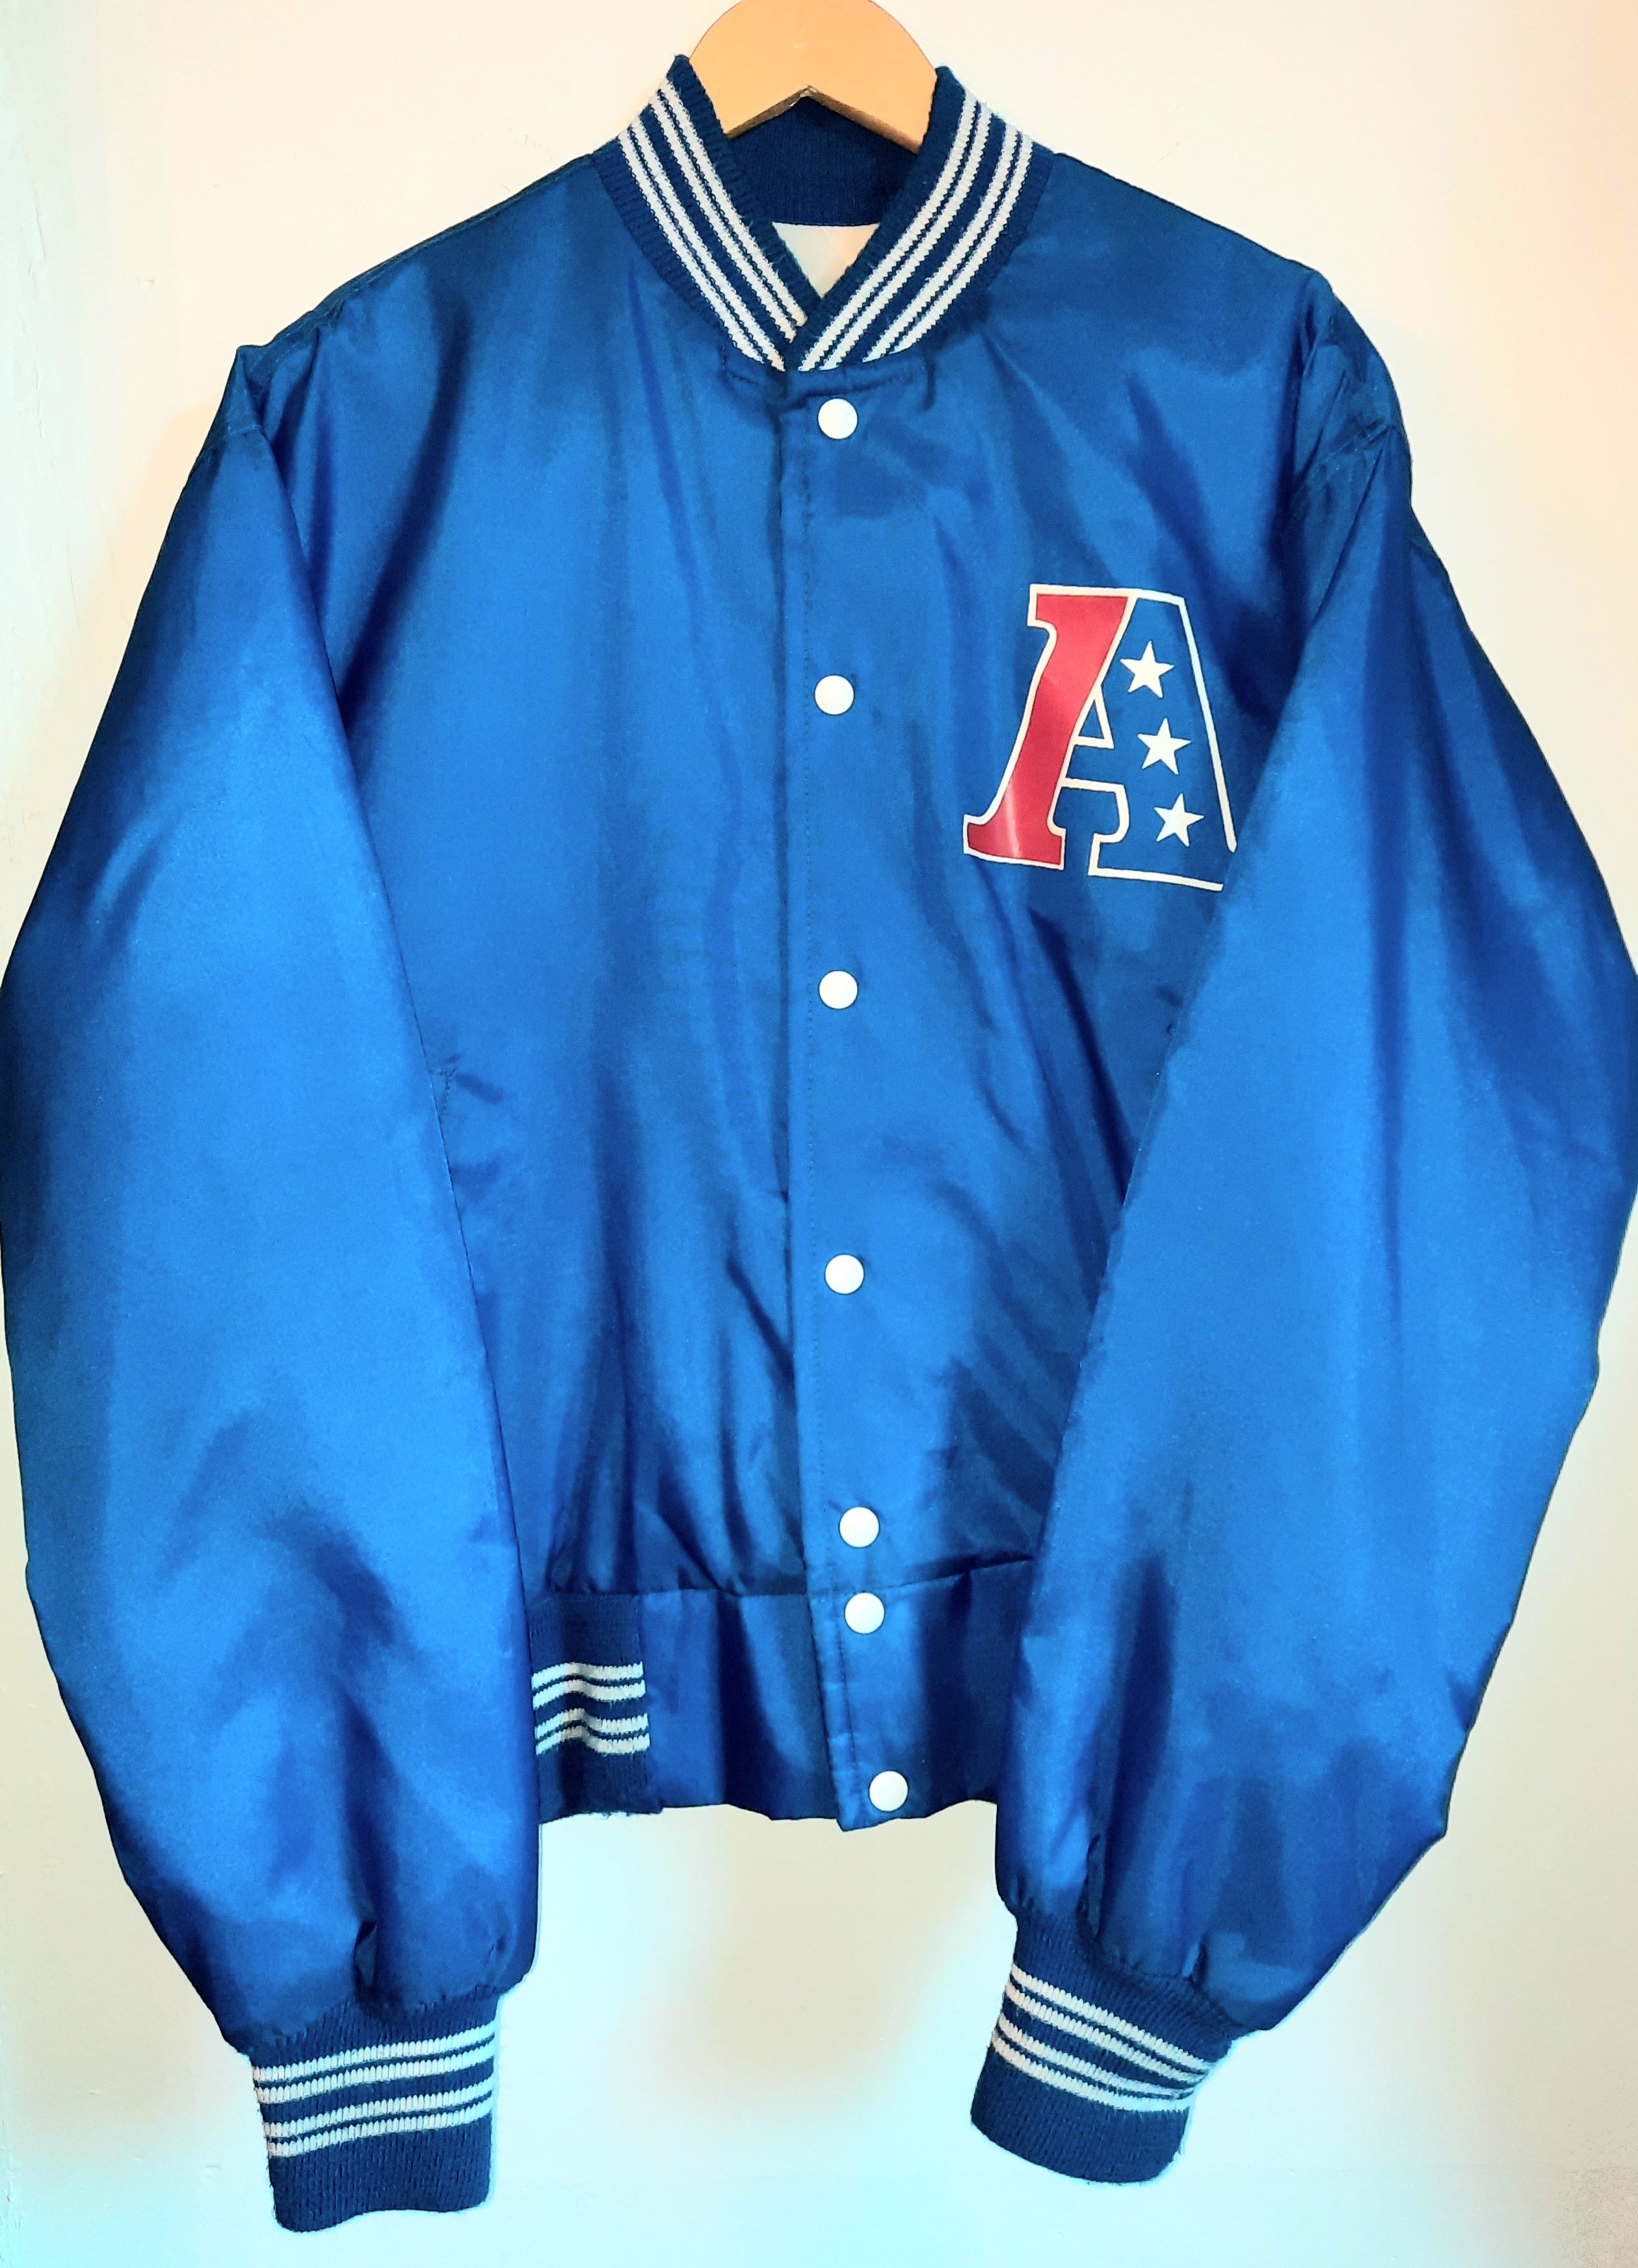 Baseball style Jacket